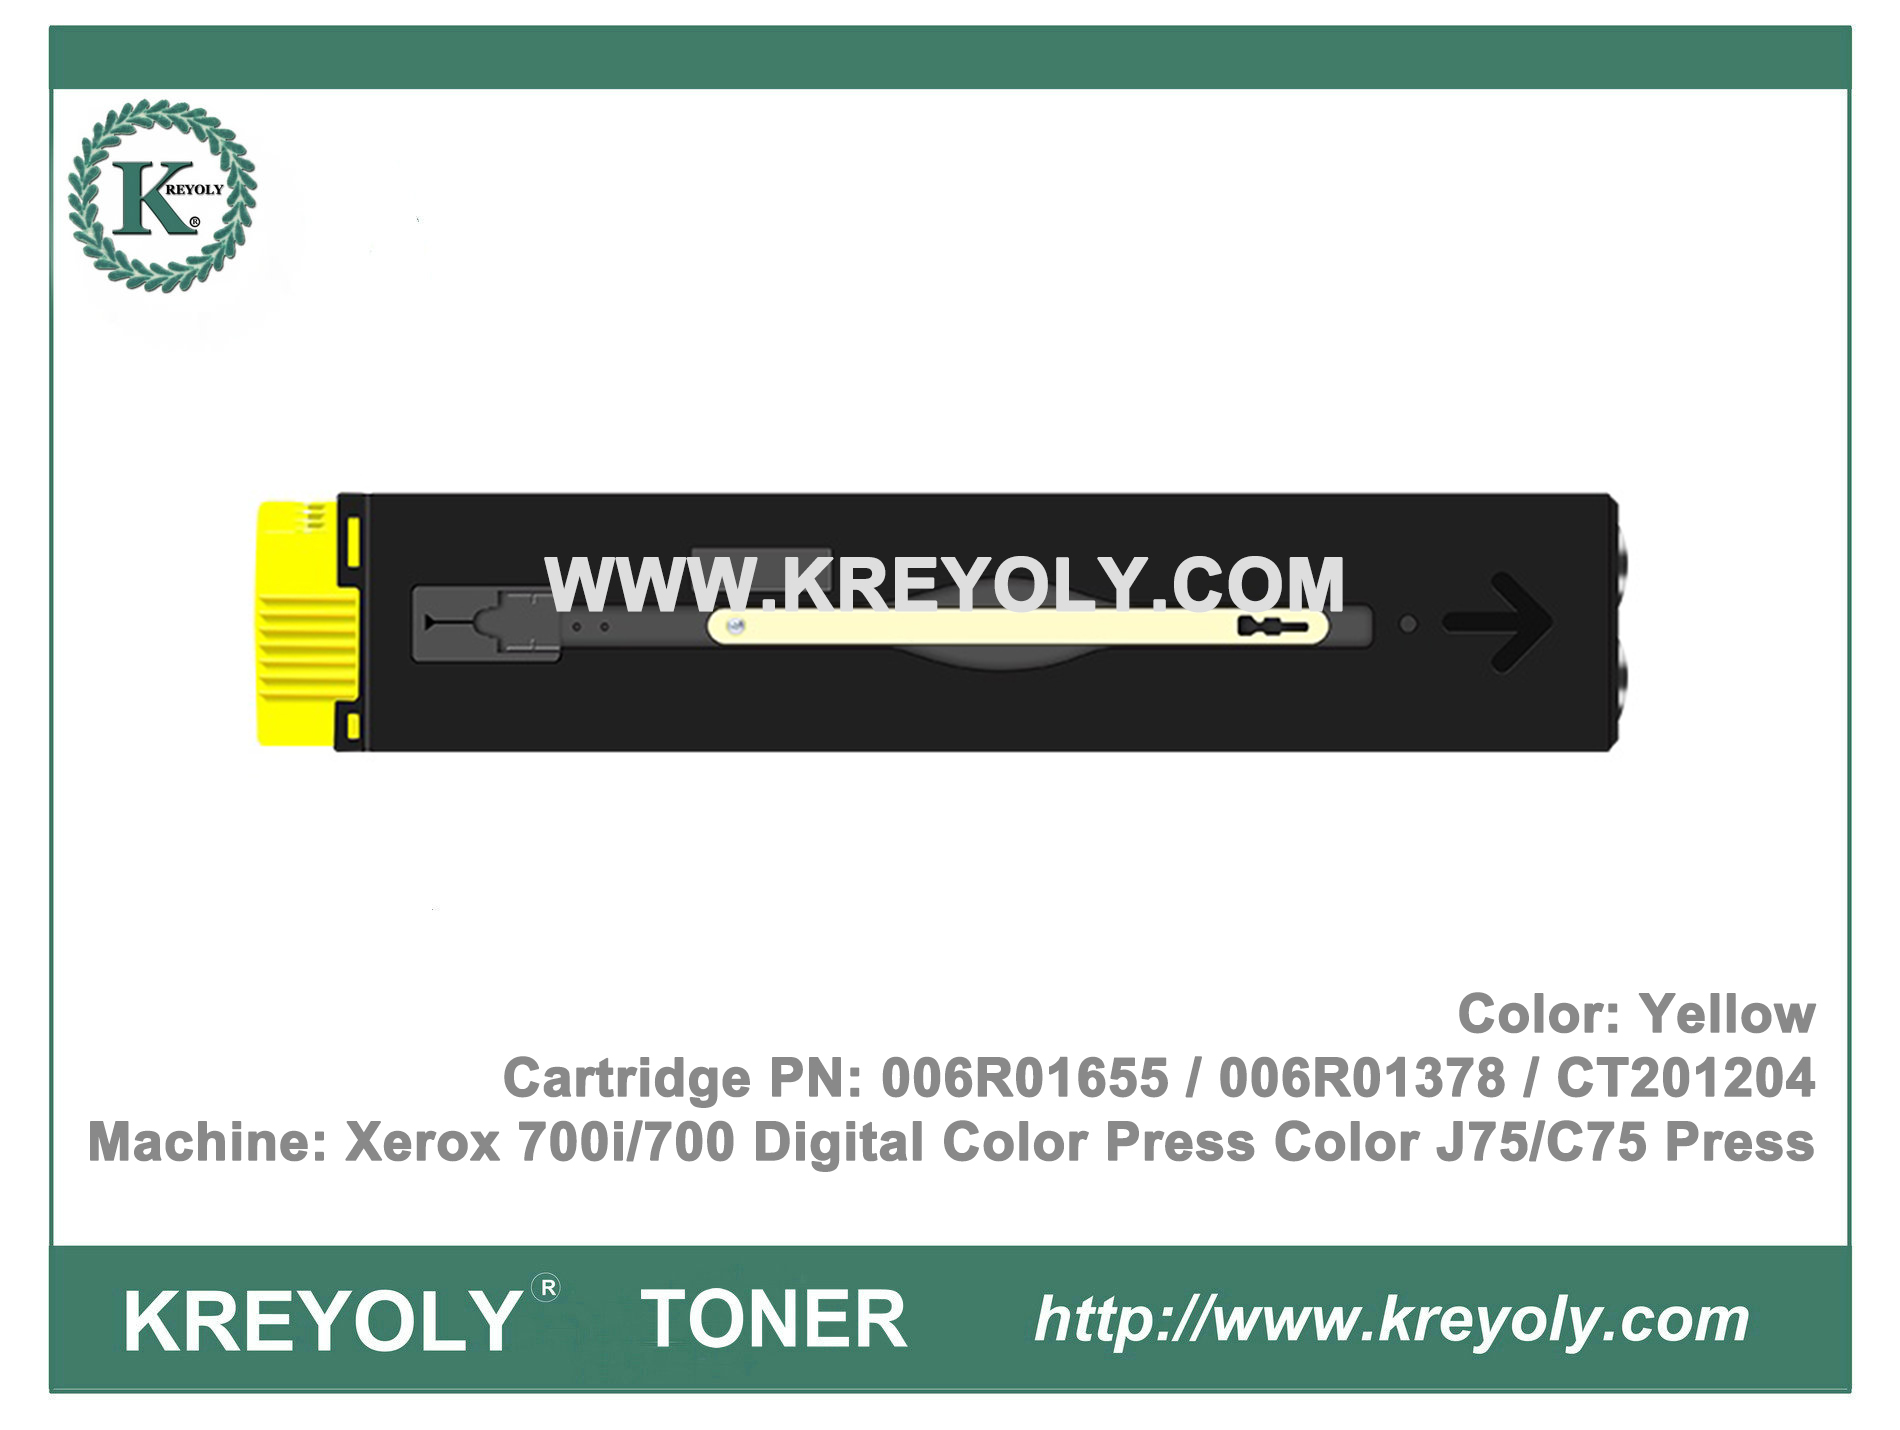 Cartouche de toner pour la presse couleur numérique Xerox 700i / 700 Presse couleur J75 / C75